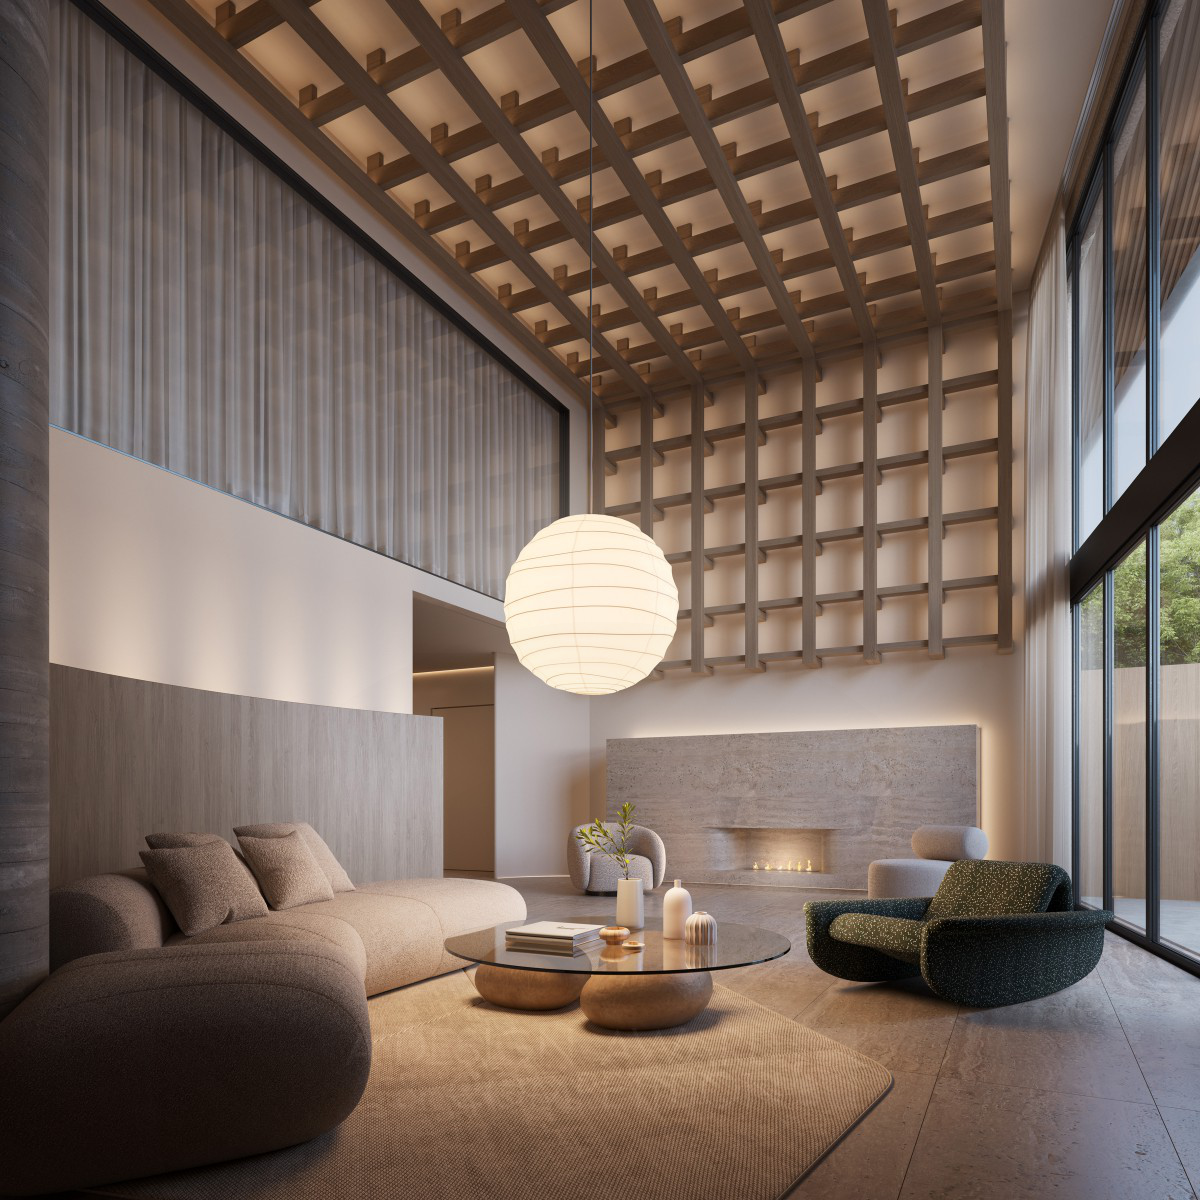 Zen Building Interior Design Project by Giuliano Marchiorato